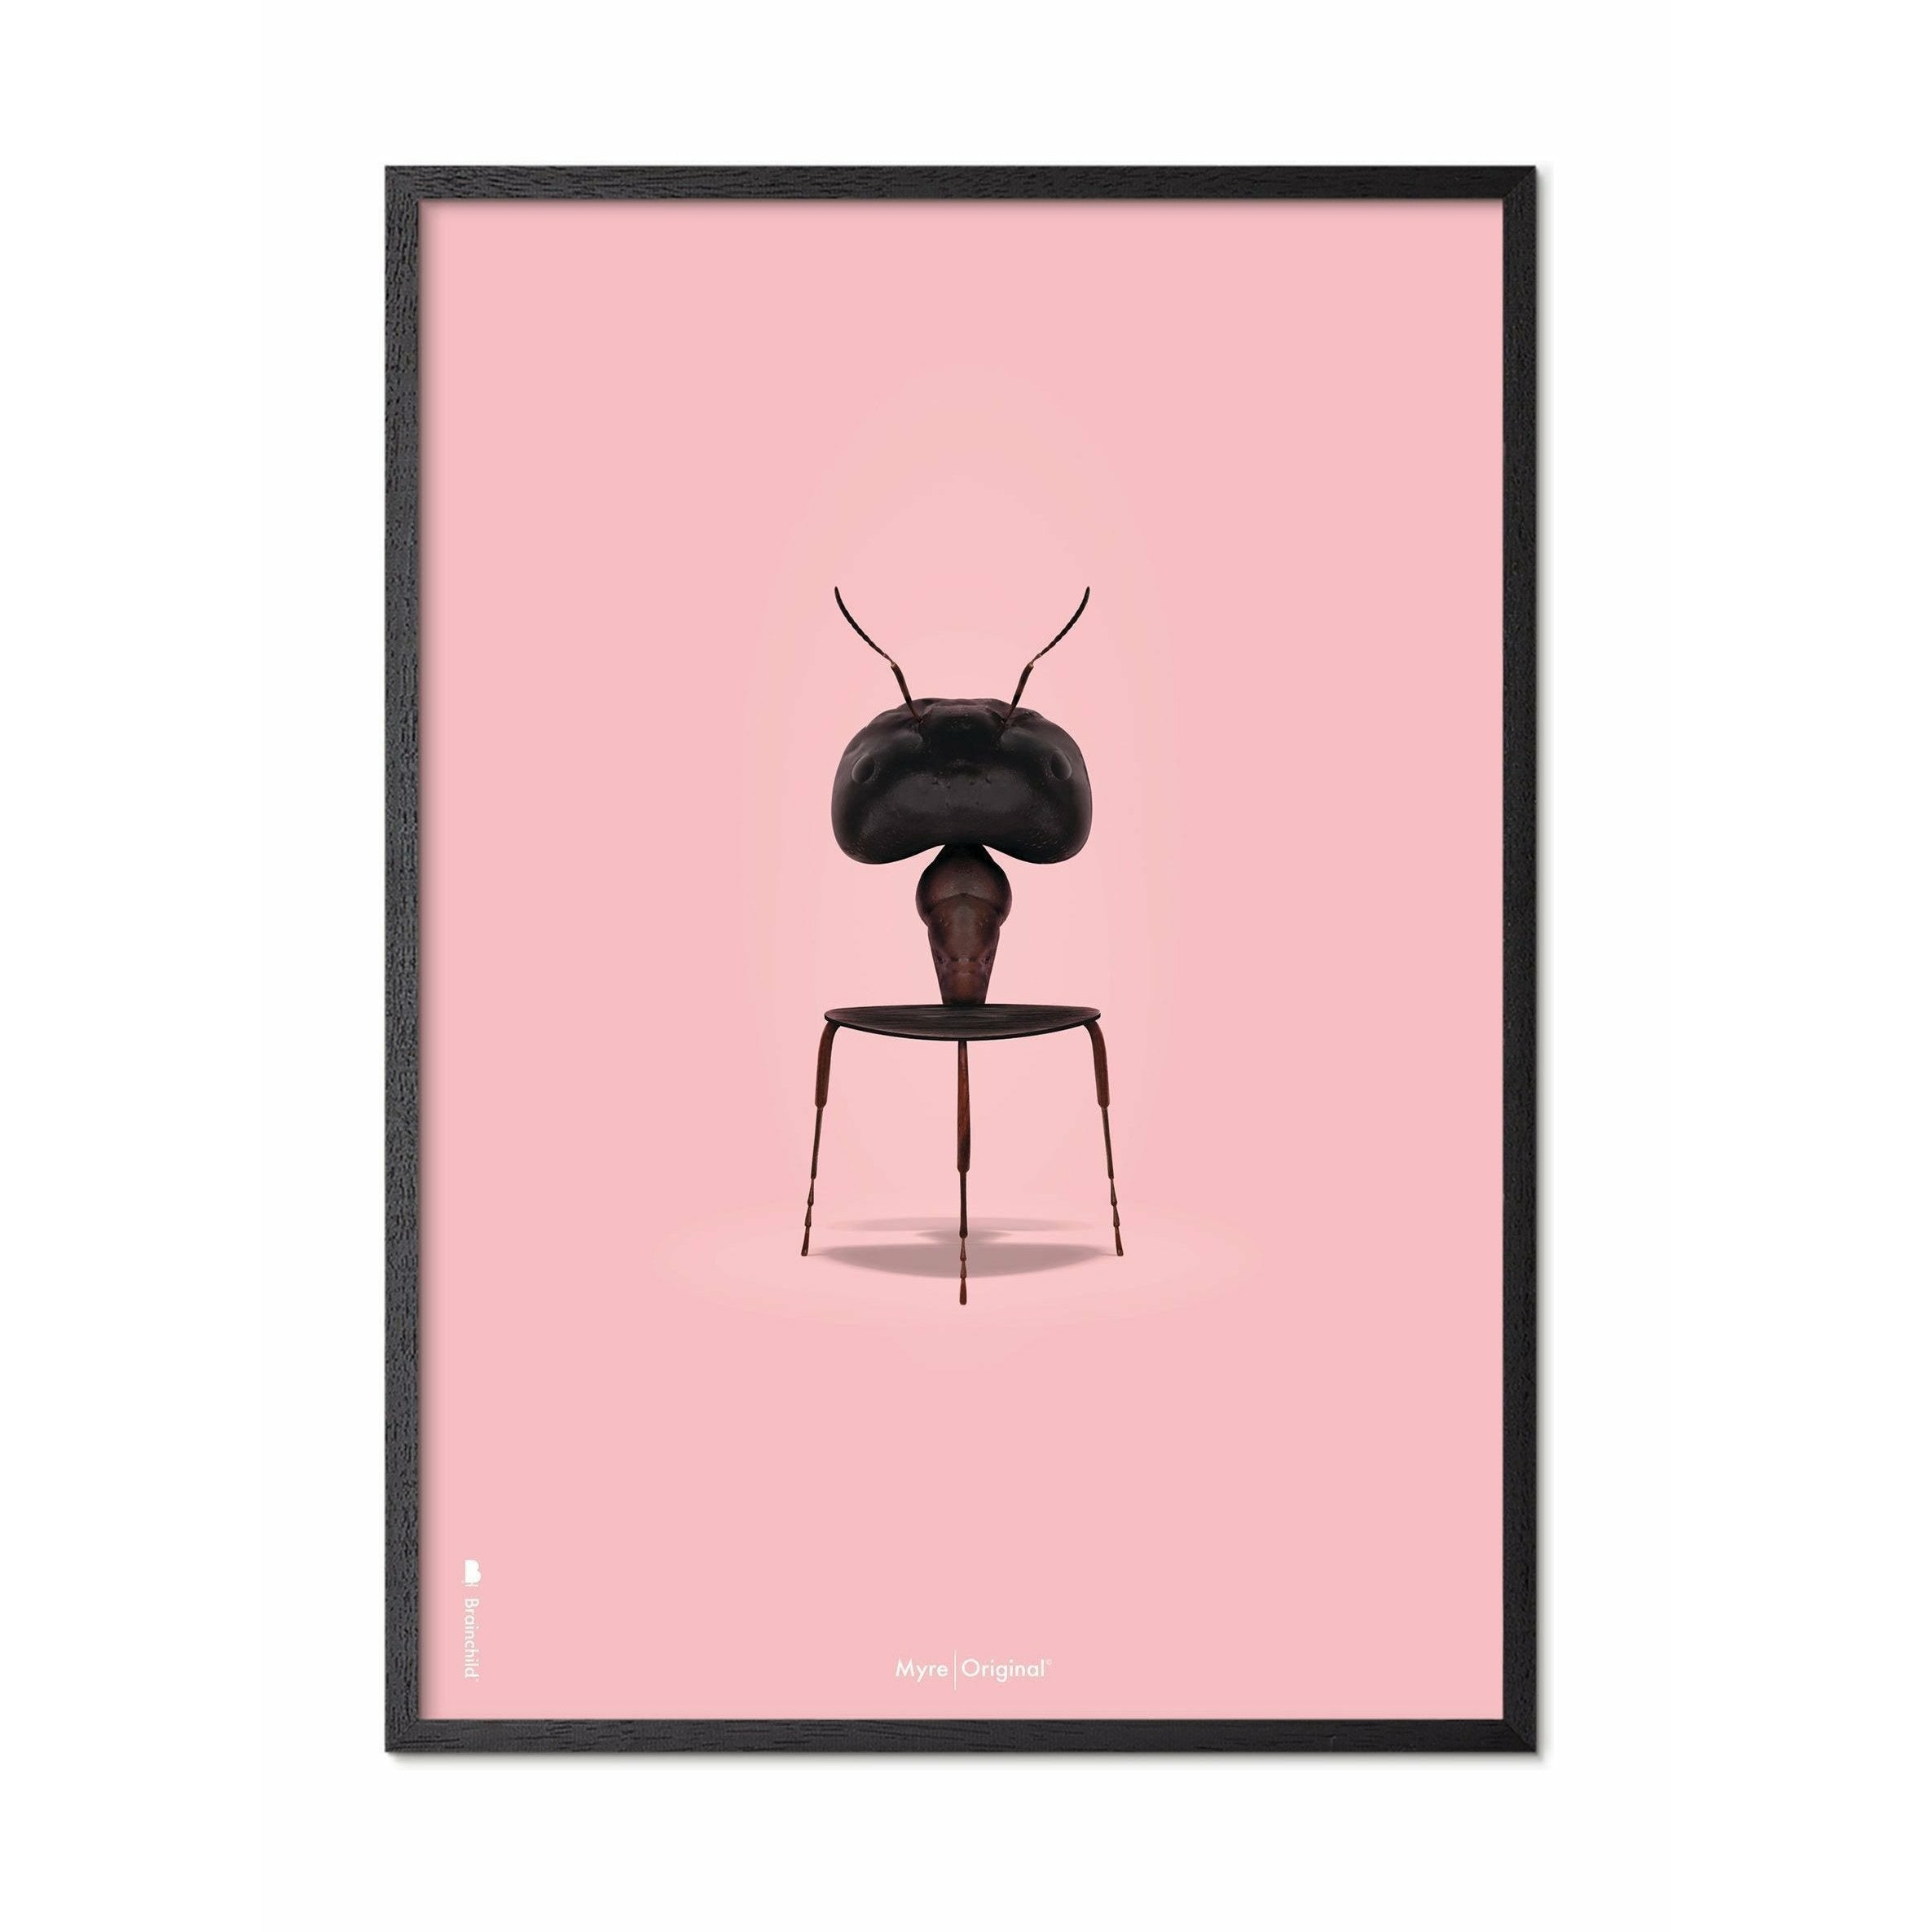 Affiche classique de fourmi imaginaire, cadre en bois laqué noir 70x100 cm, fond rose